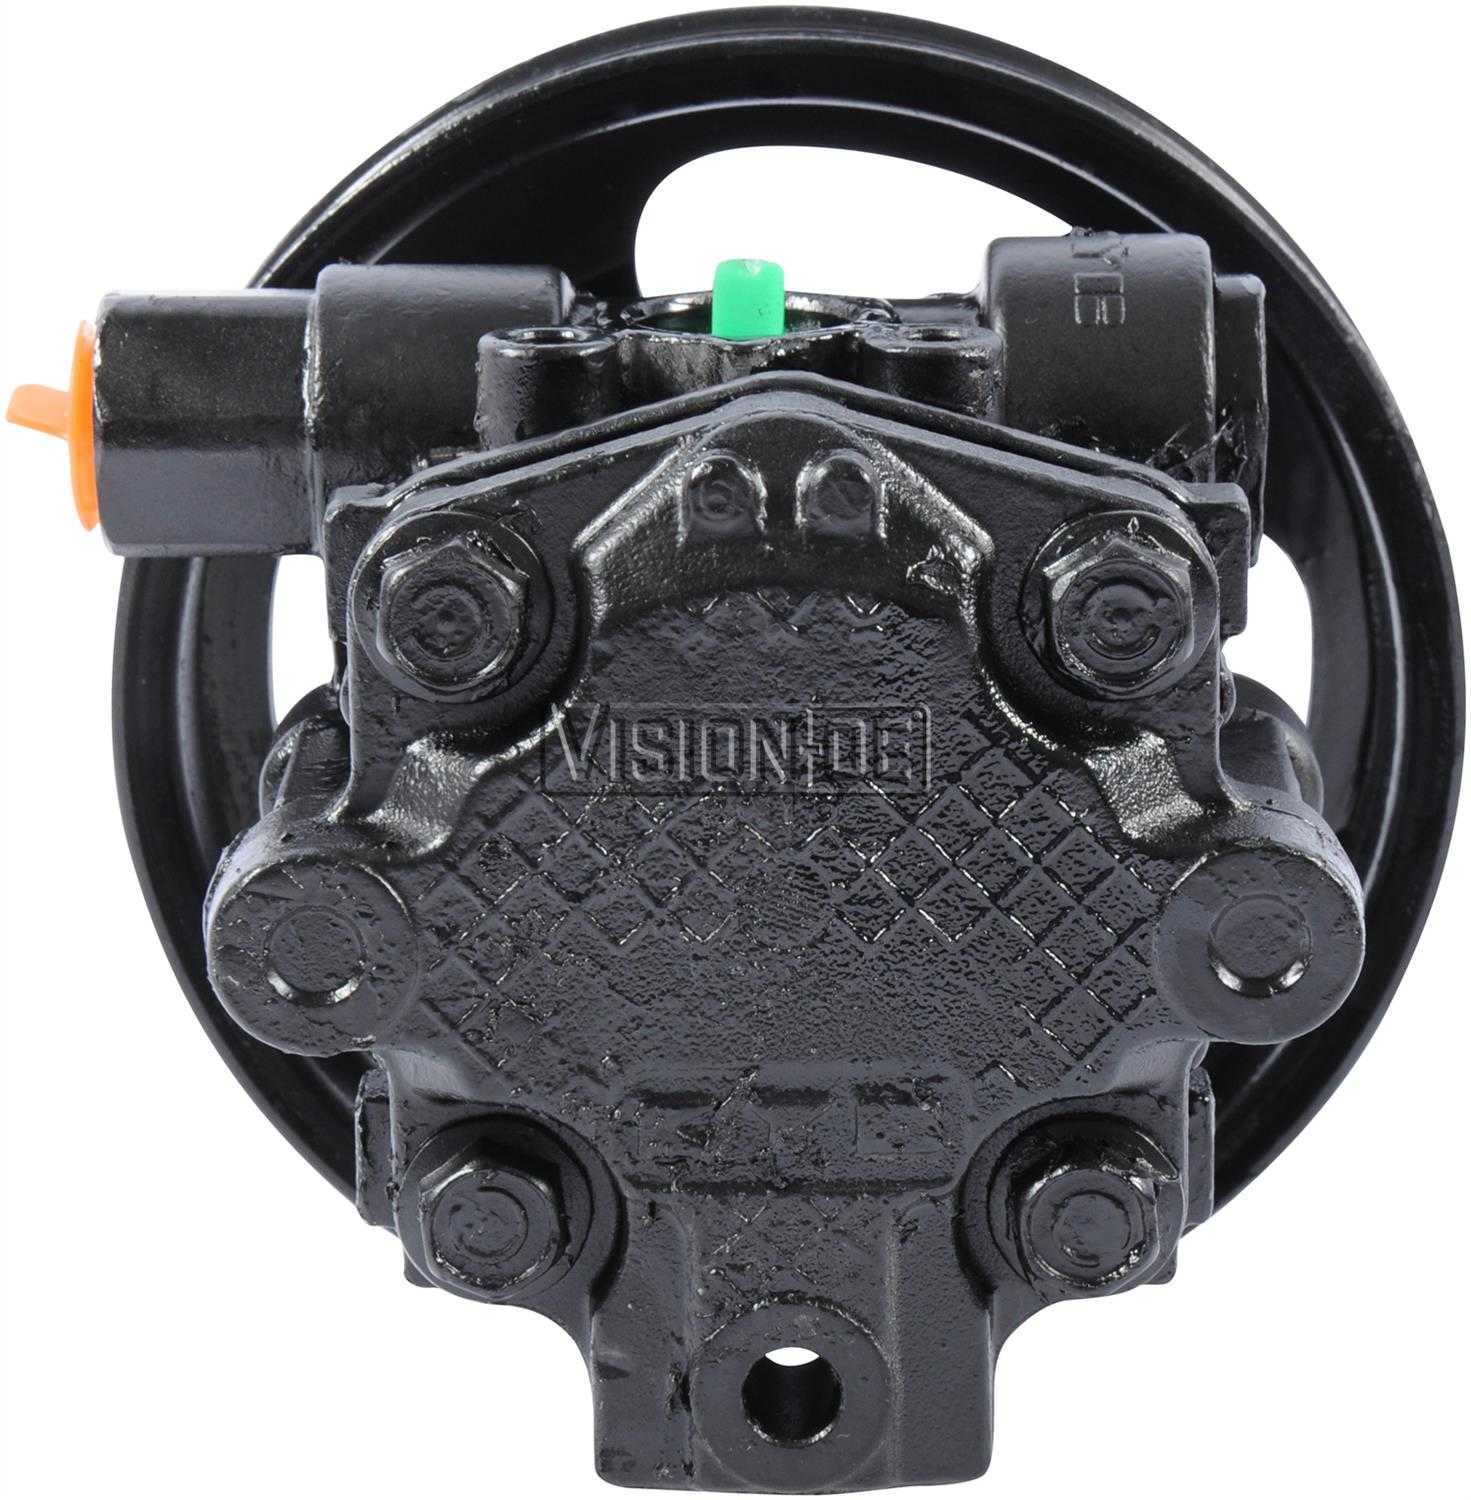 VISION-OE - Reman Power Steering Pump - VOE 990-0859